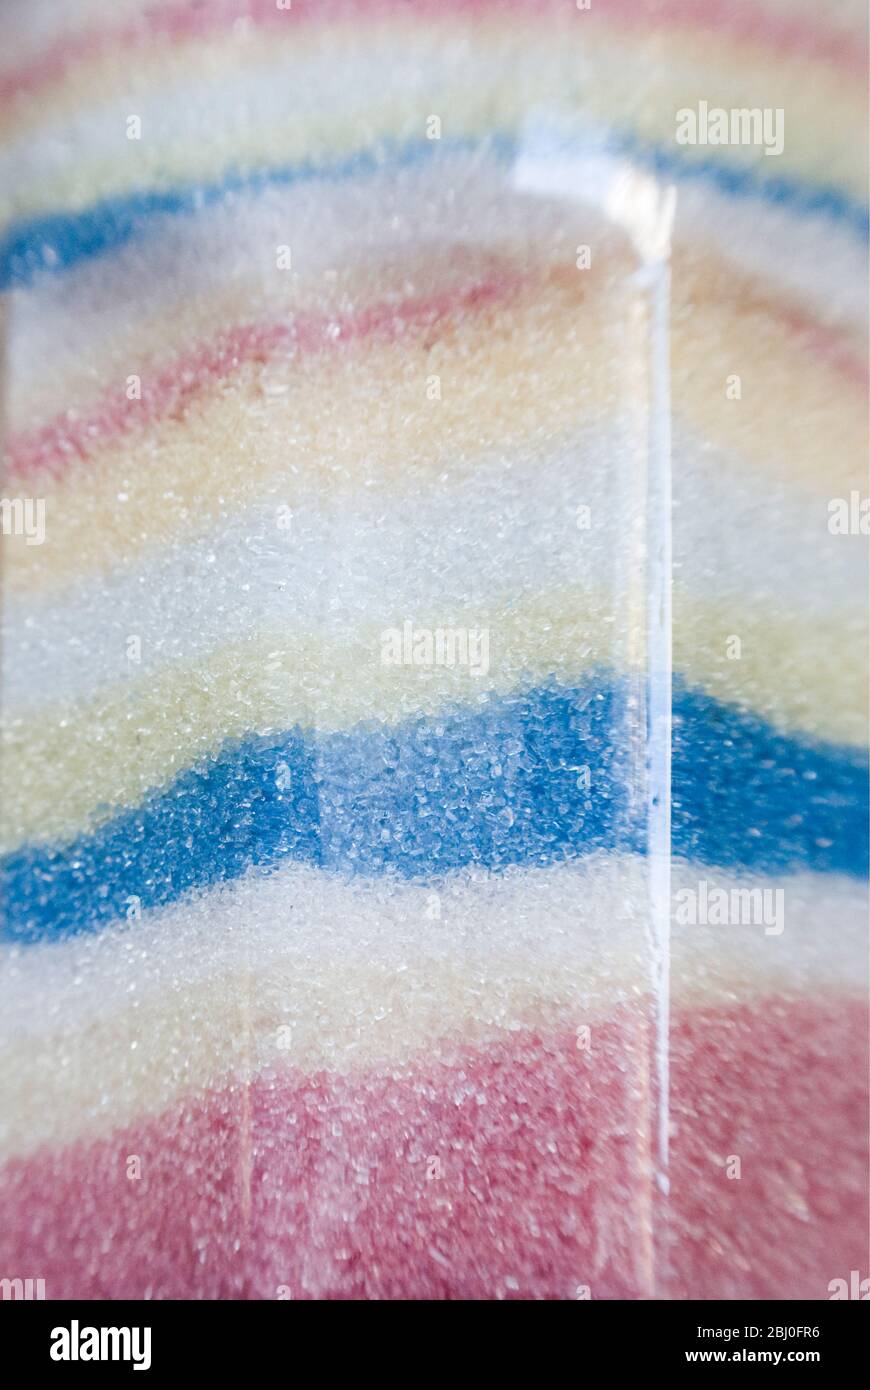 Detail von Französisch Glas Zucker mit pastellfarbenen Kristallen von Zucker in separaten Schichten angeordnet - Stockfoto